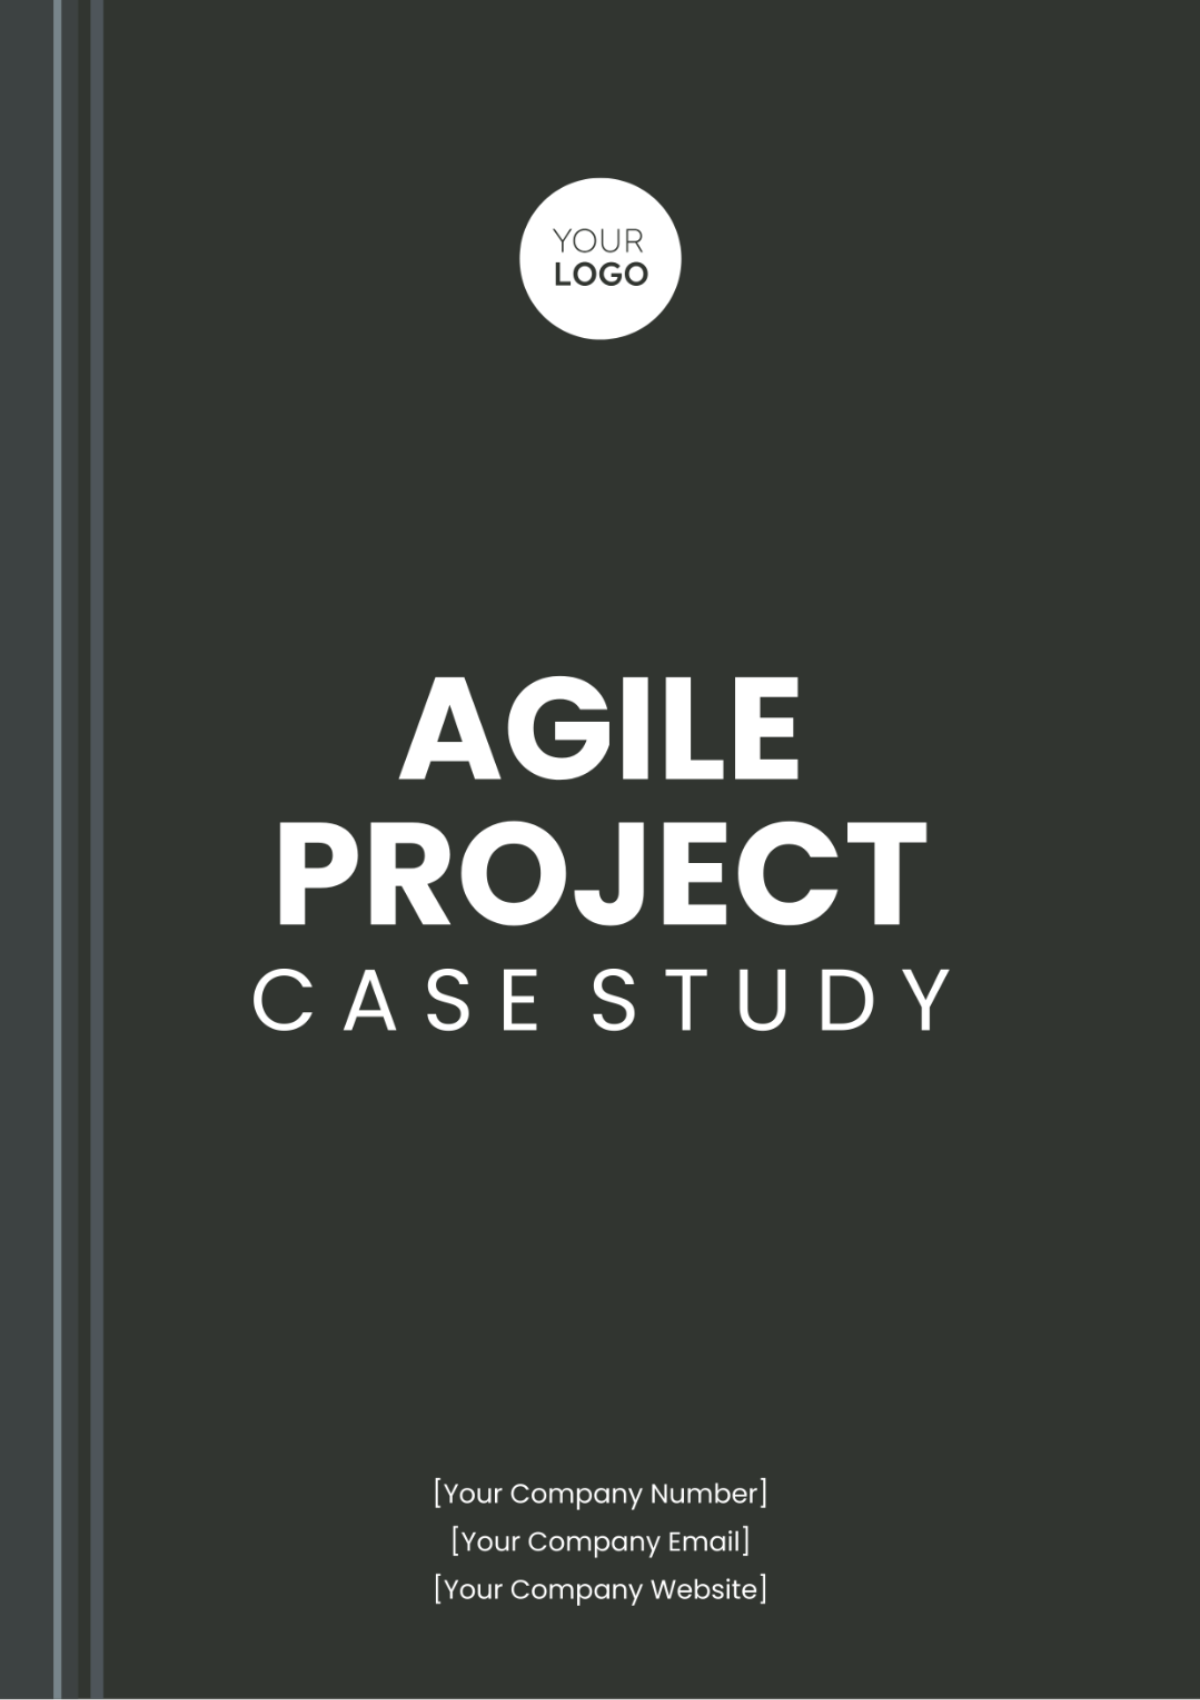 Agile Project Case Study Template